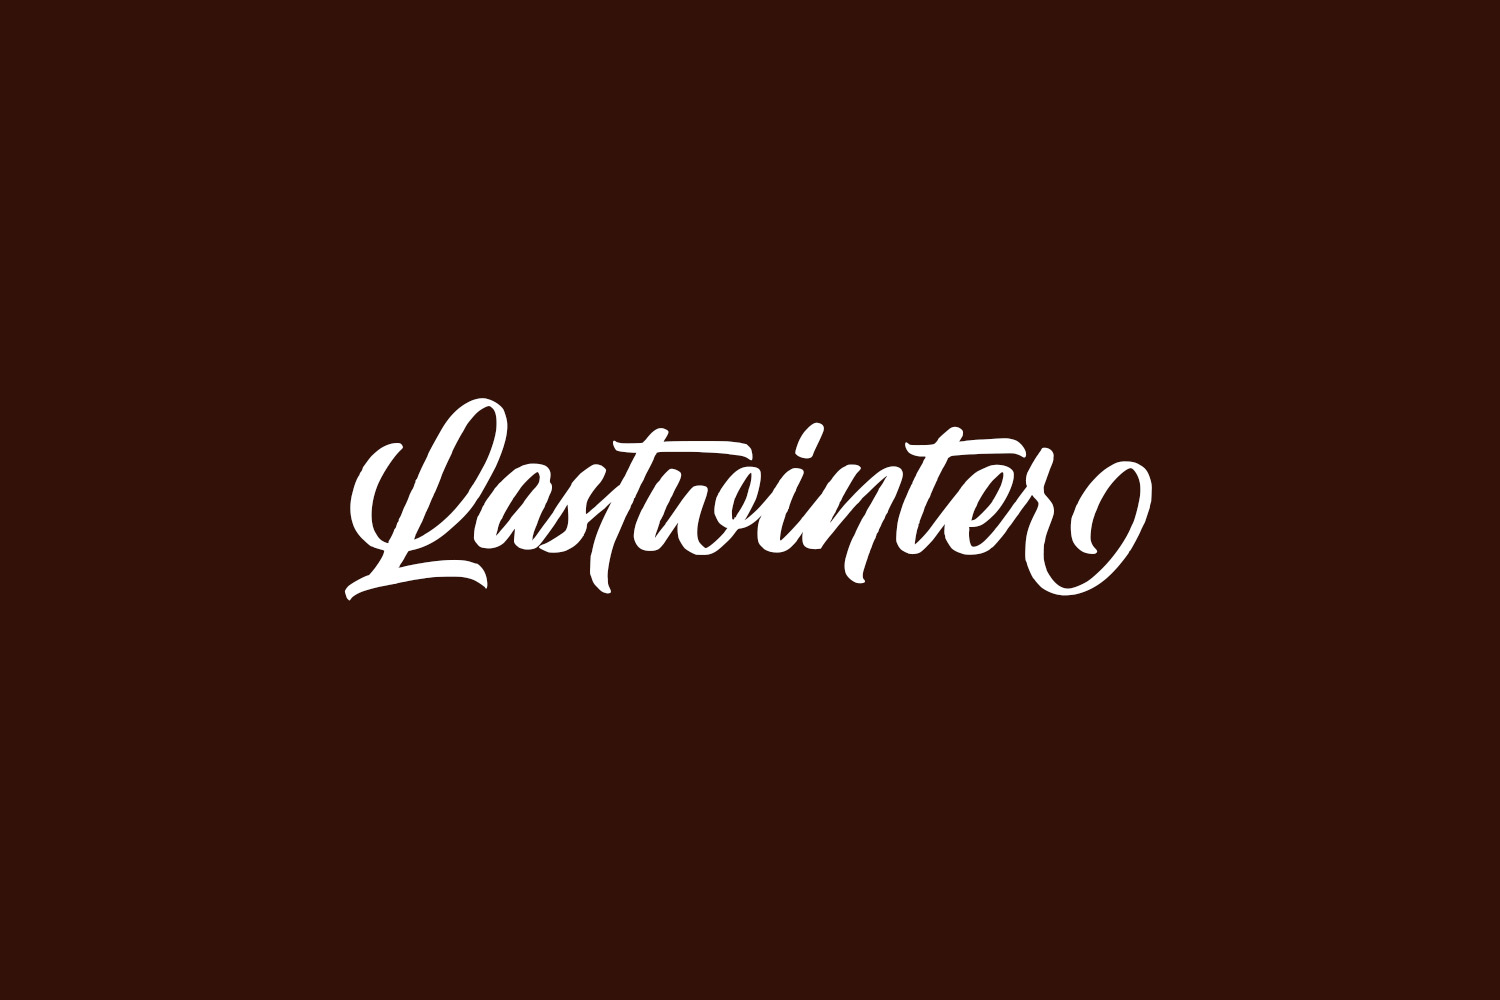 Lastwinter | Fonts Shmonts